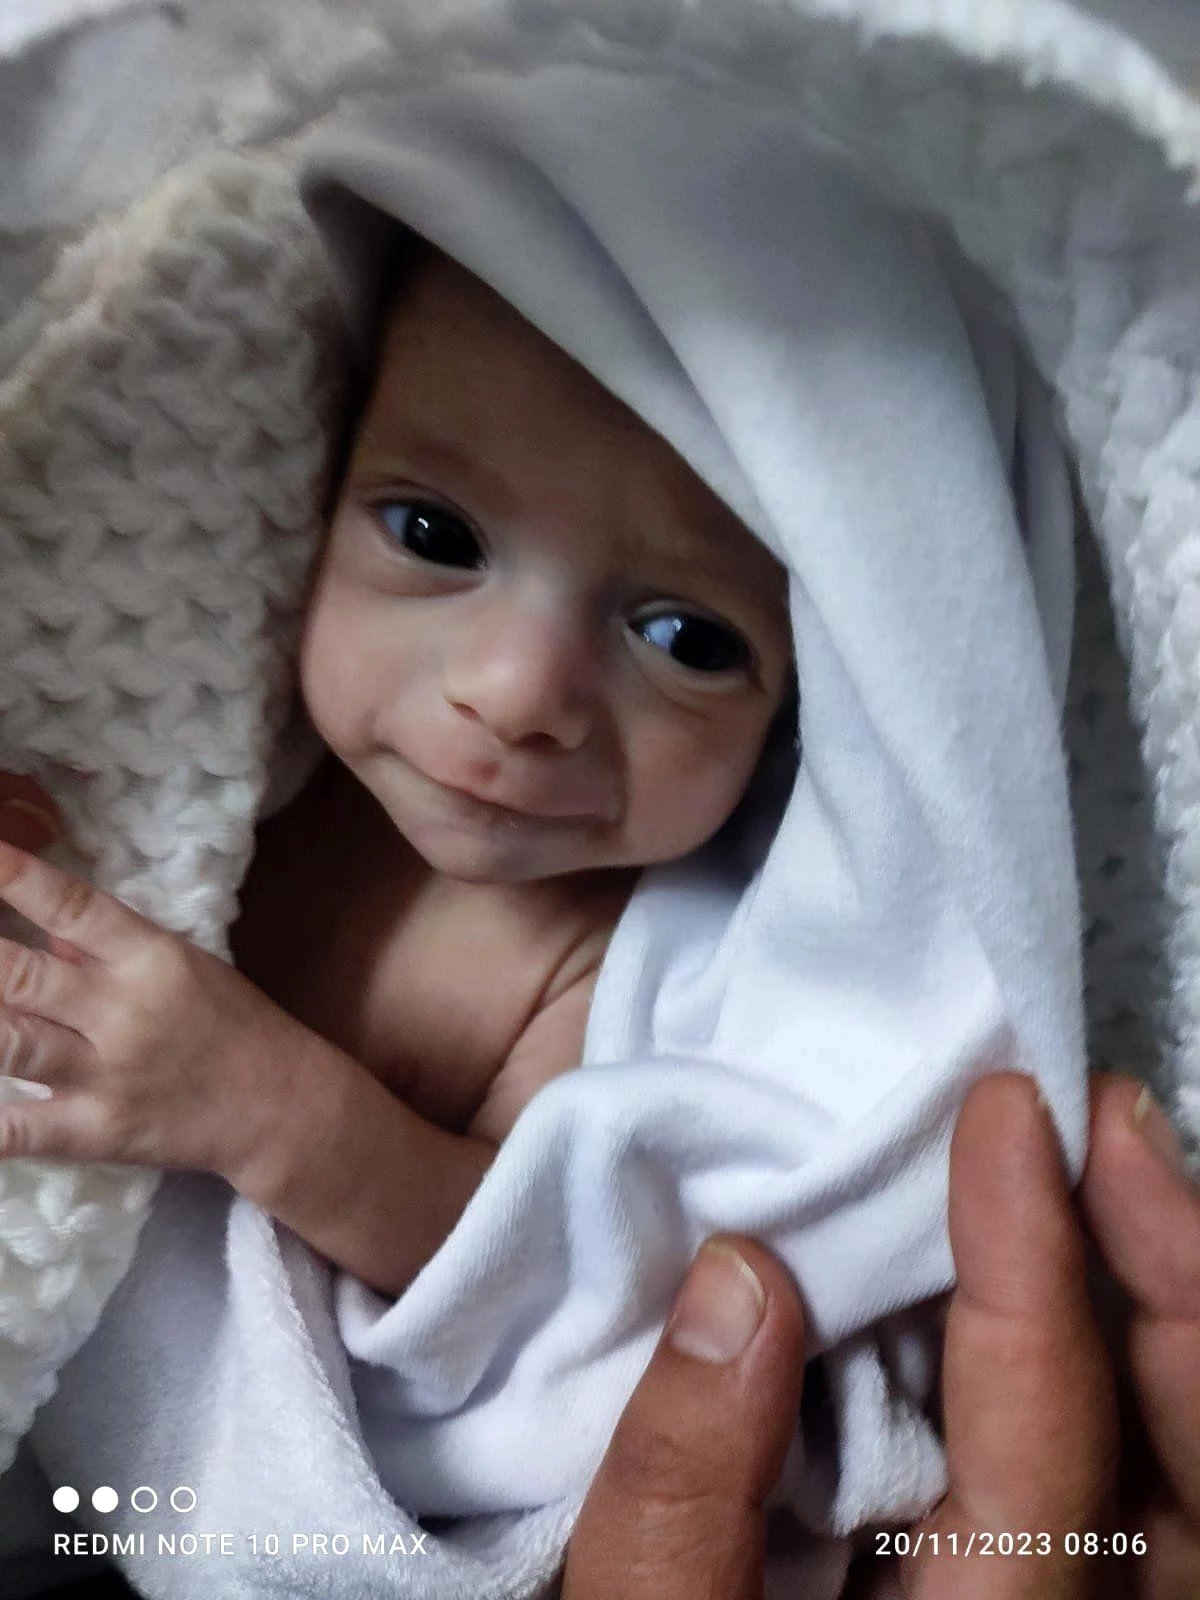 Gazzeli anne ve babalar prematüre bebekleriyle buluştu: \'Hala yaşıyor olmaları bir mucize\'